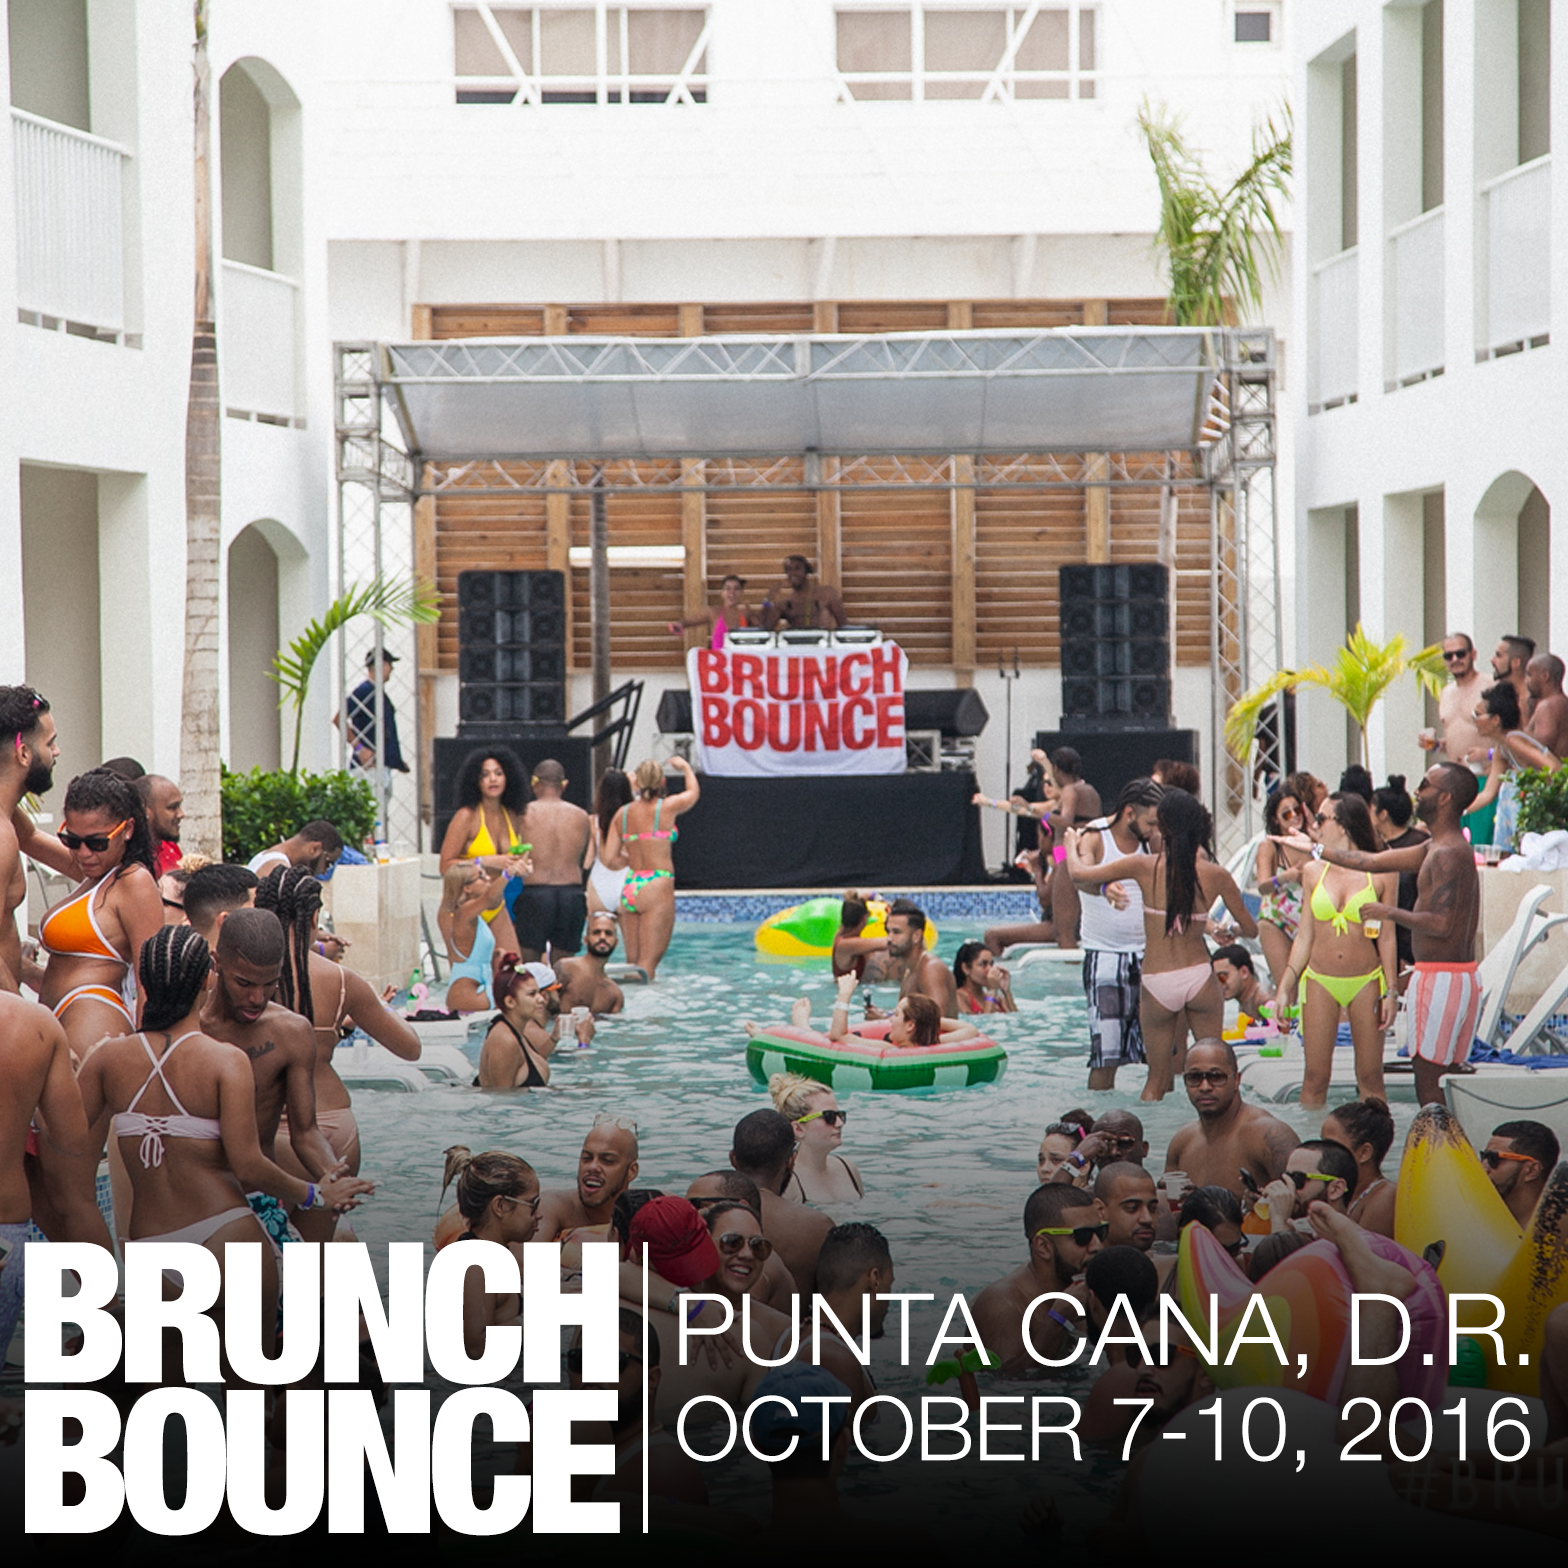 Brunch Bounce D.R. Punta Cana Oct 7-10